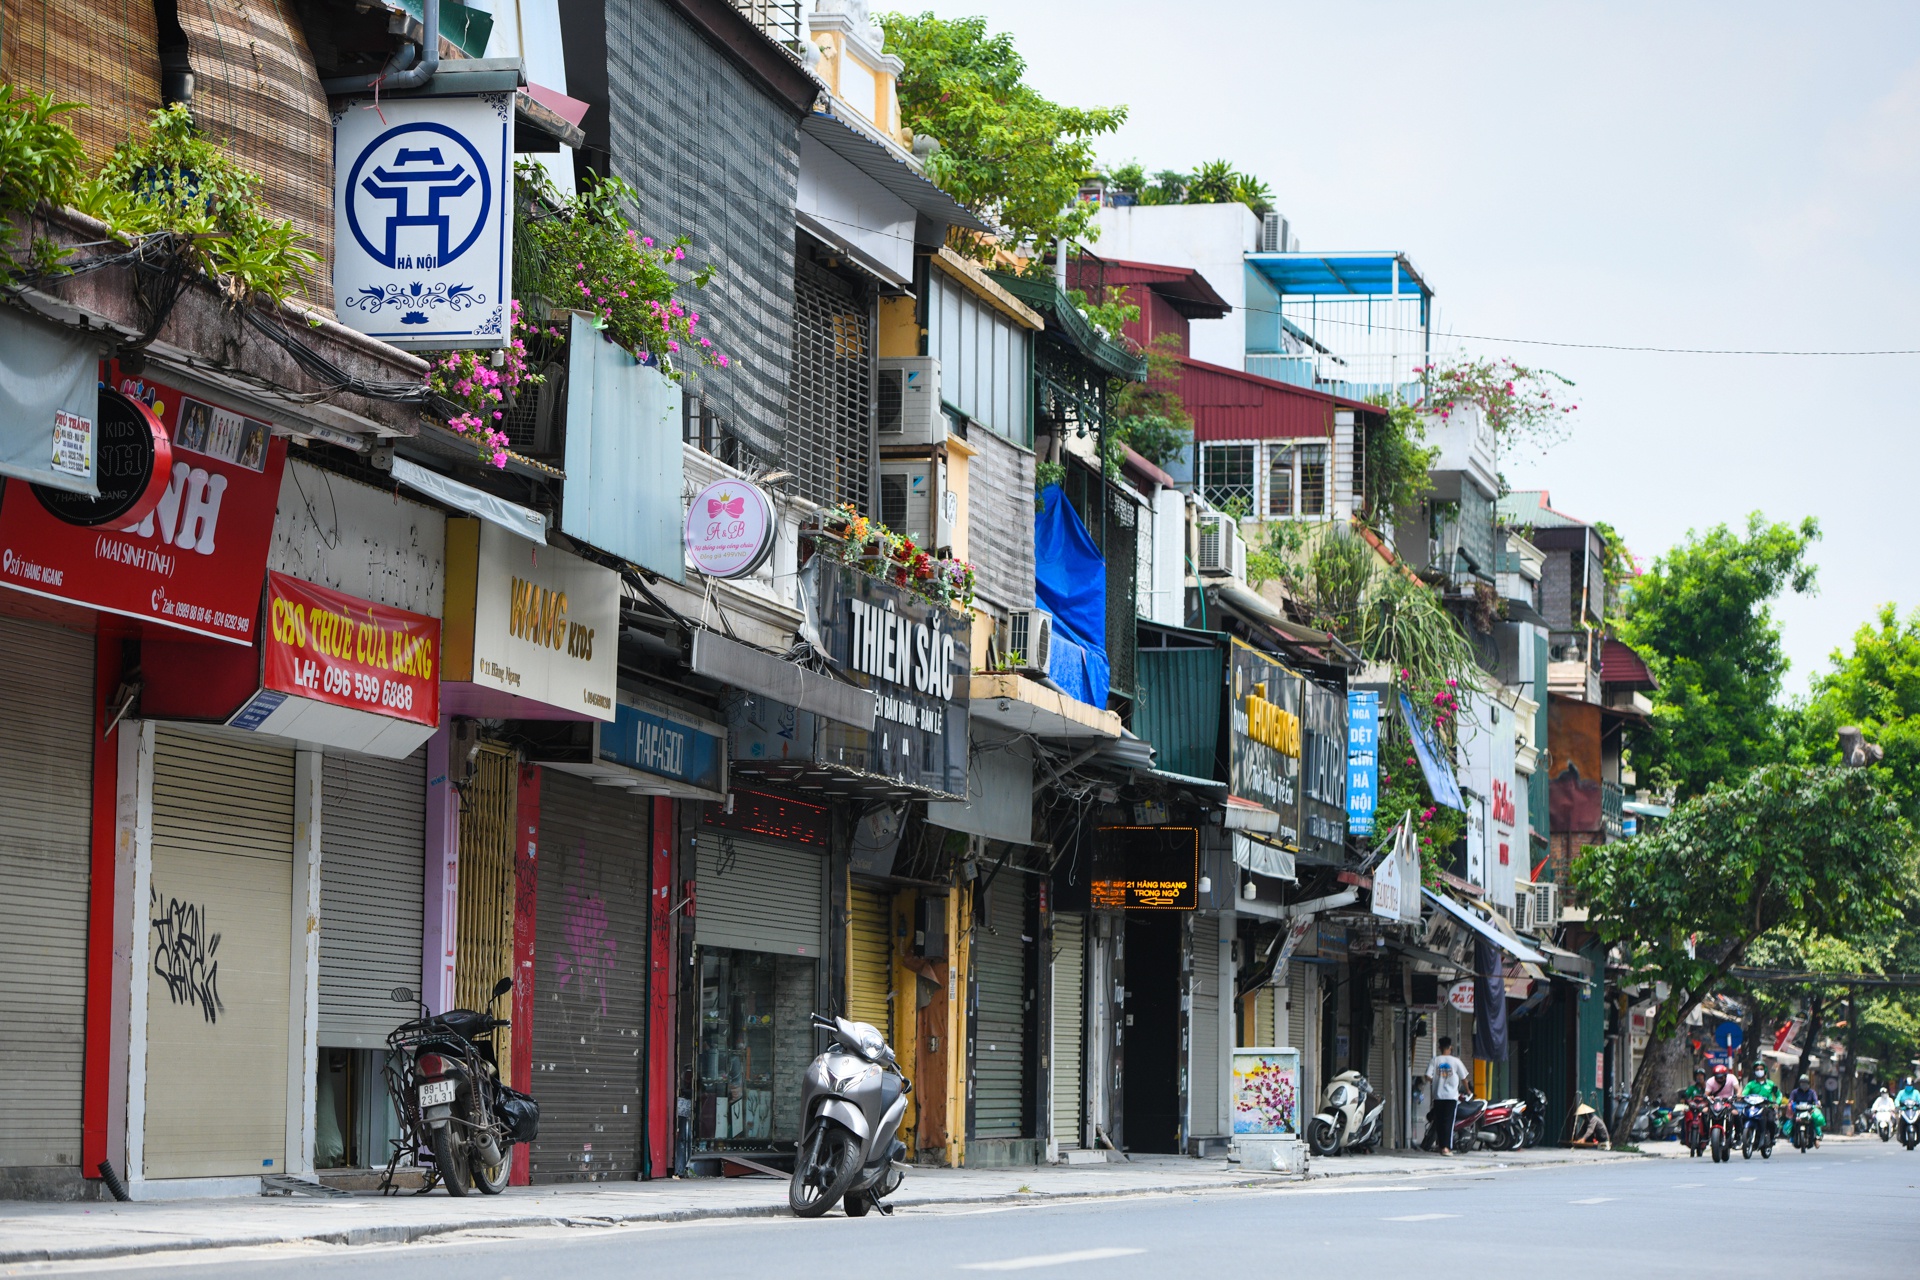 Hàng loạt nhà phố cổ Hà Nội treo biển cho thuê, bán nhà - Ảnh 1.